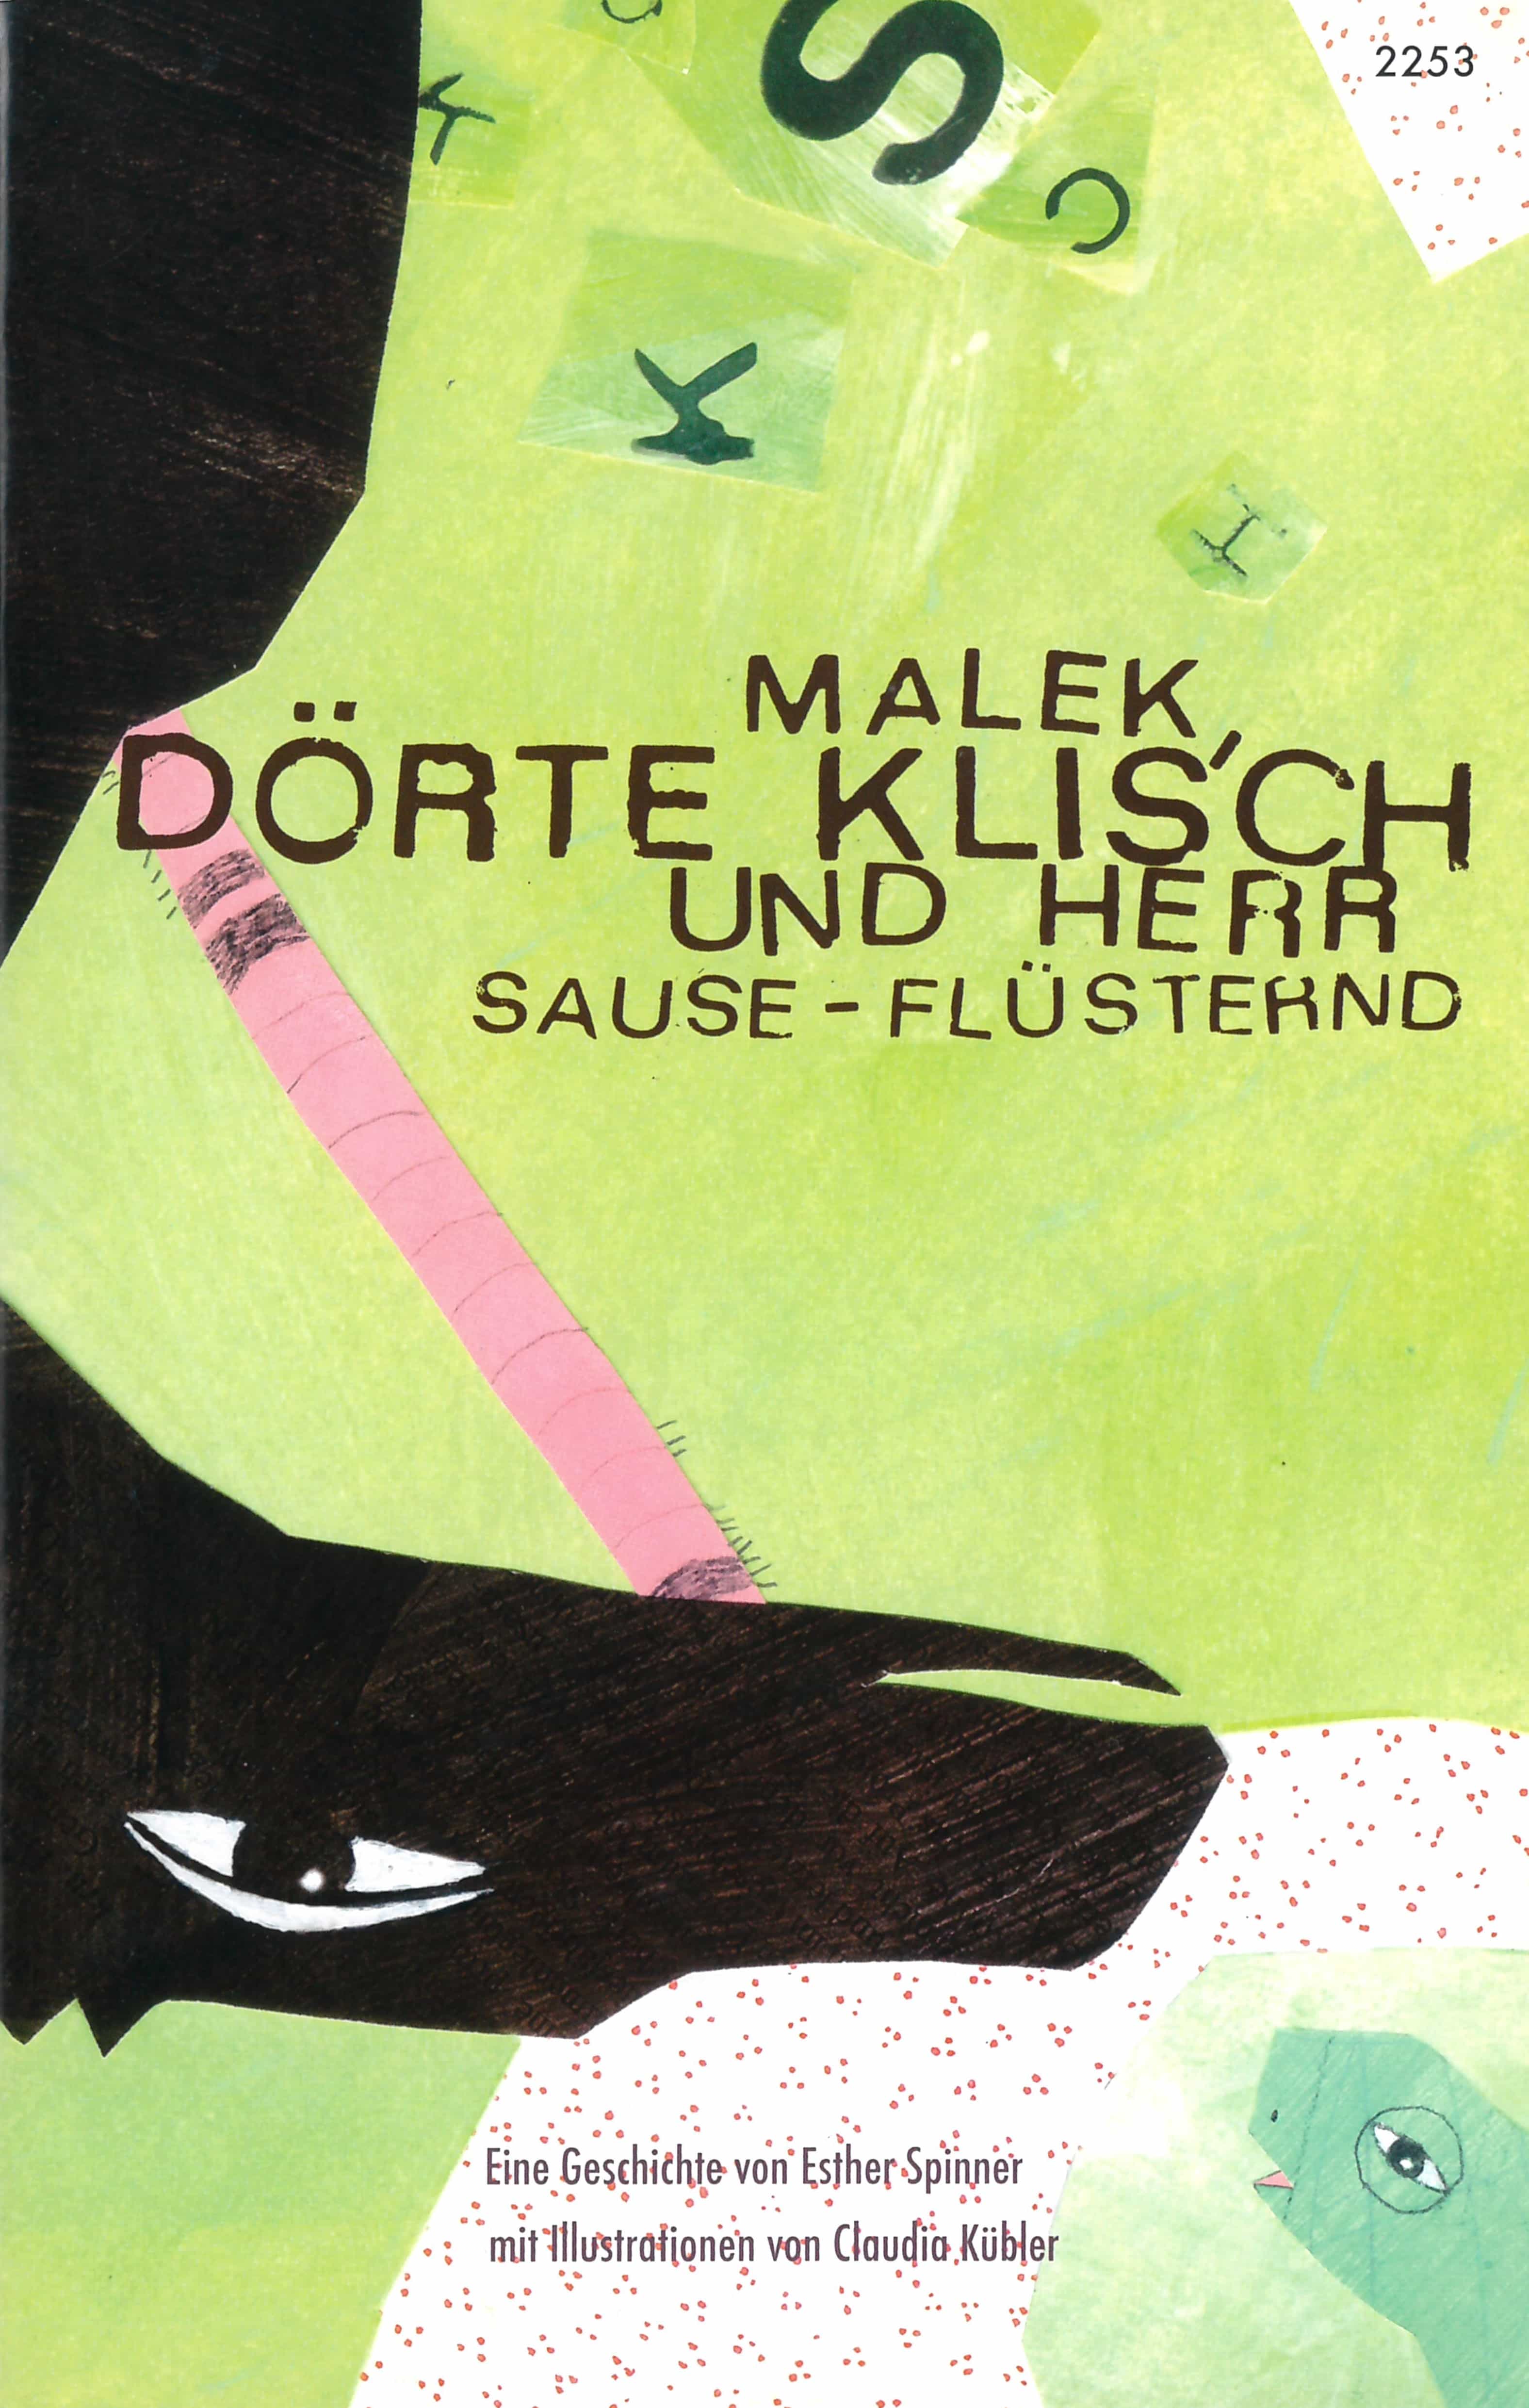 Malek, Doerte Klisch und Herr Sause-Fluesternd, ein Kinderbuch von Esther Spinner, Illustration von Claudia Kuebler, SJW Verlag